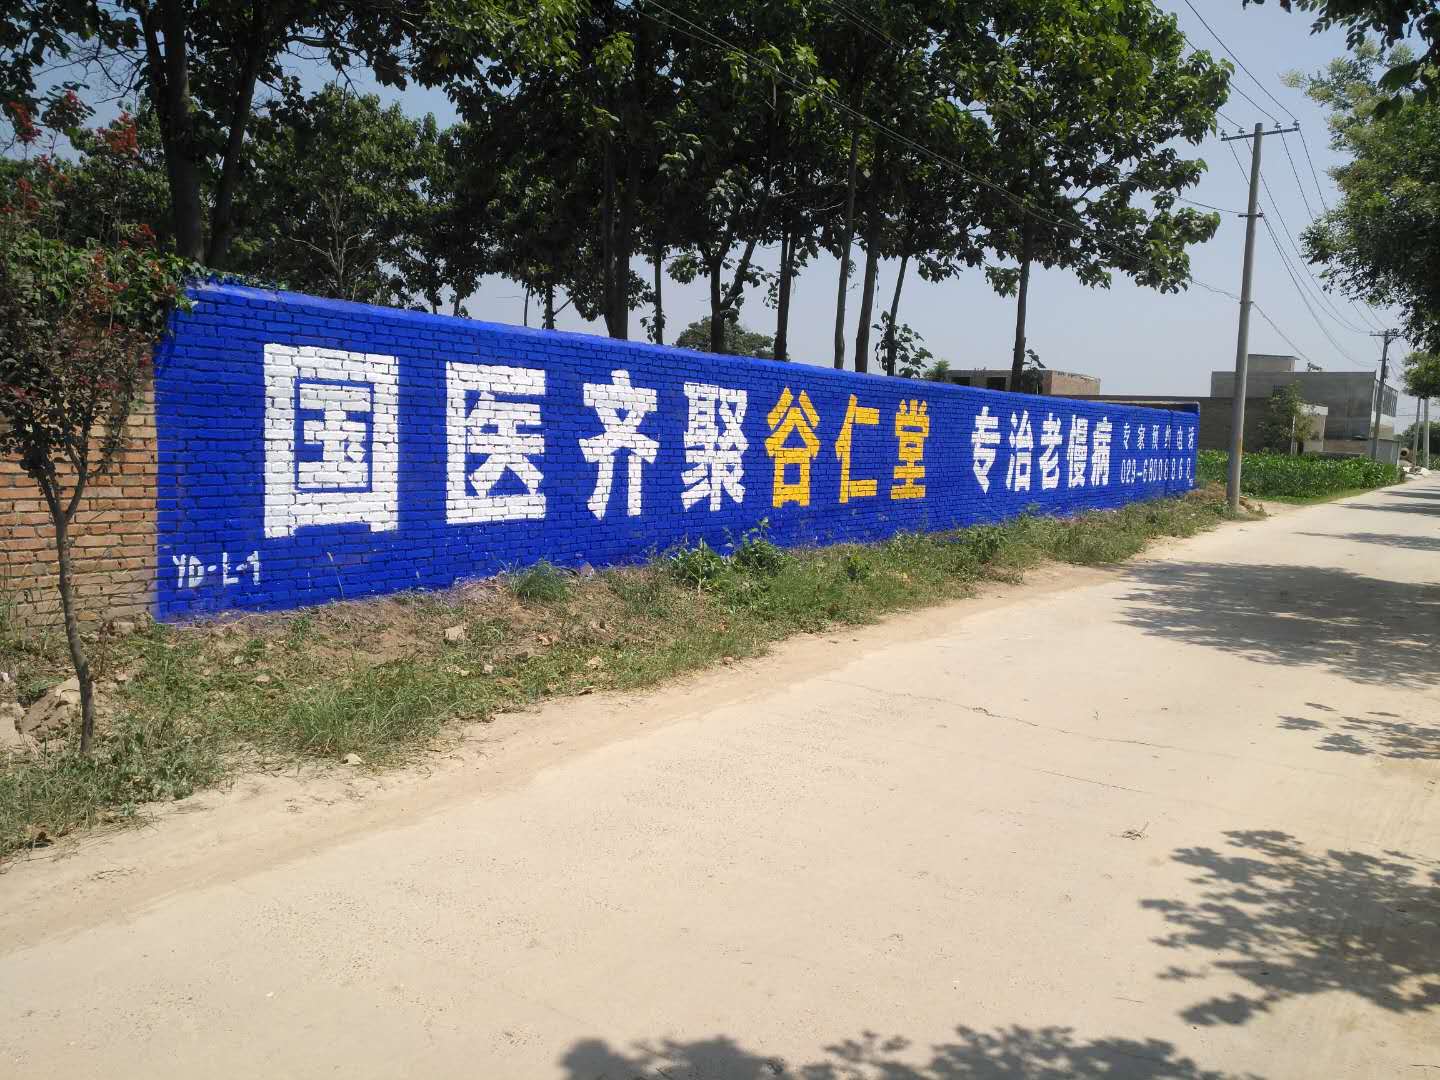 谷仁堂医院低墙手绘墙体广告.jpg